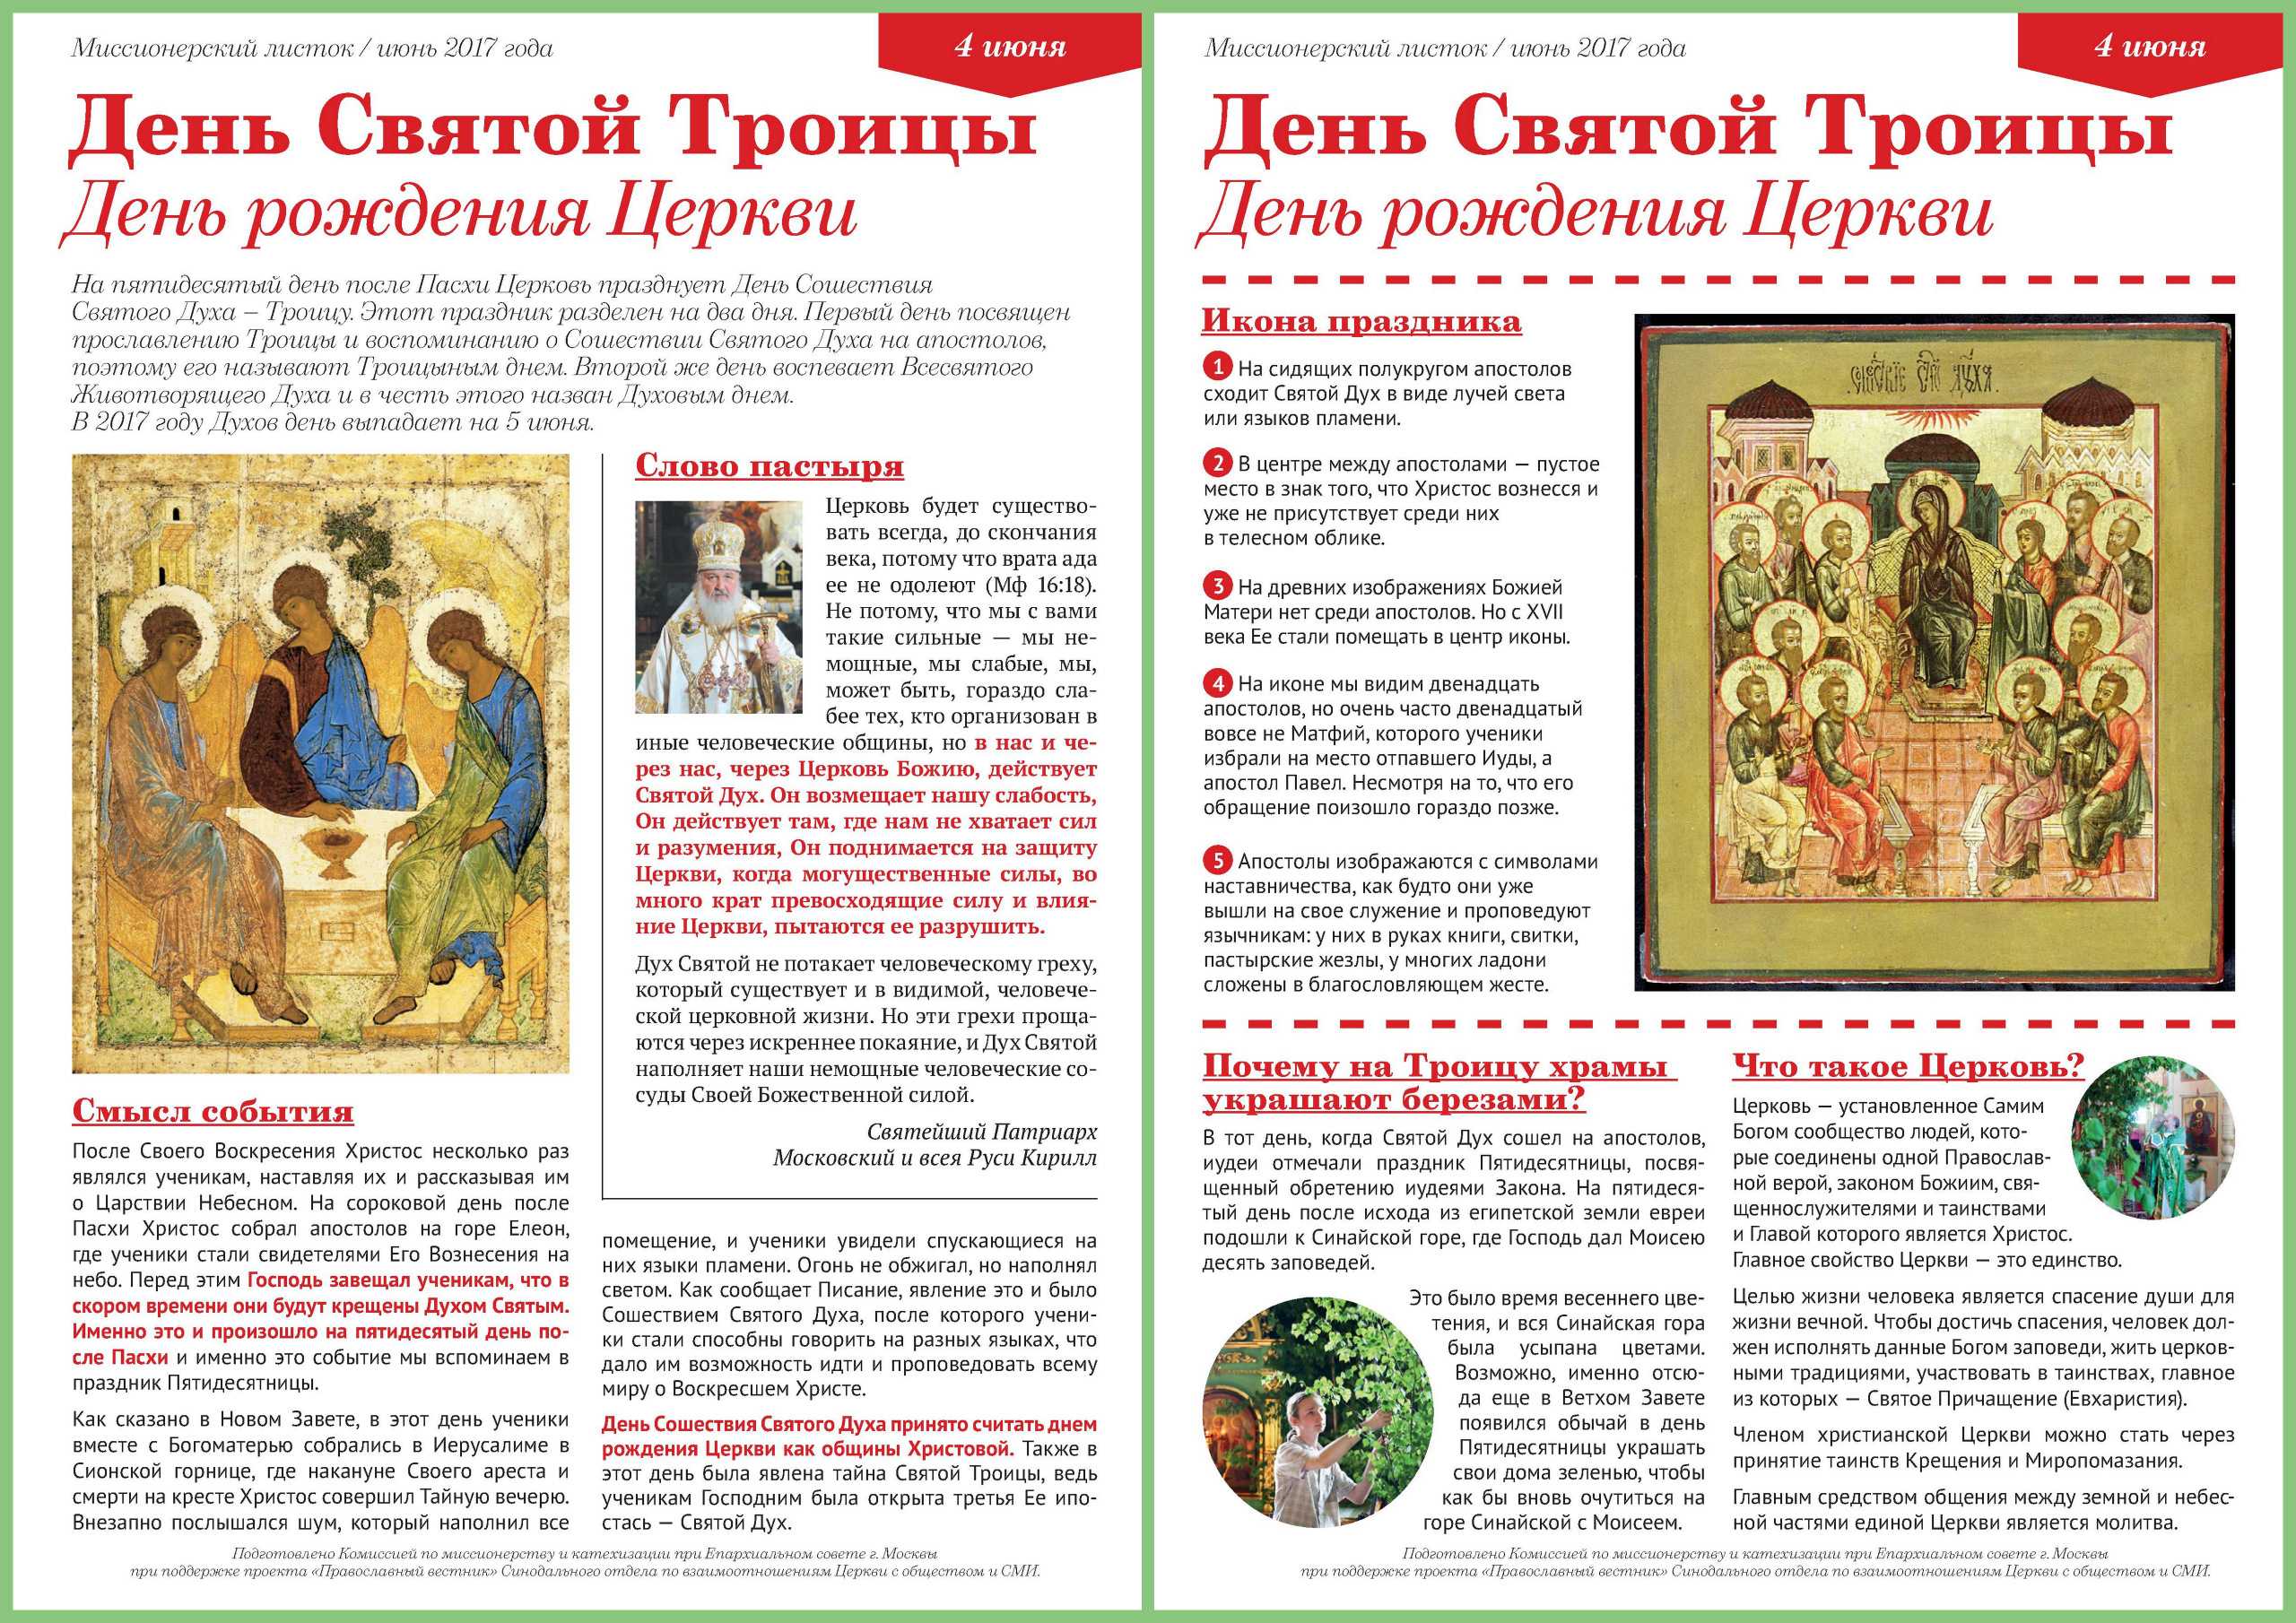 Песни на троицу: русские народные и христианские. традиционно-обрядовая песня для детей в праздник троицы